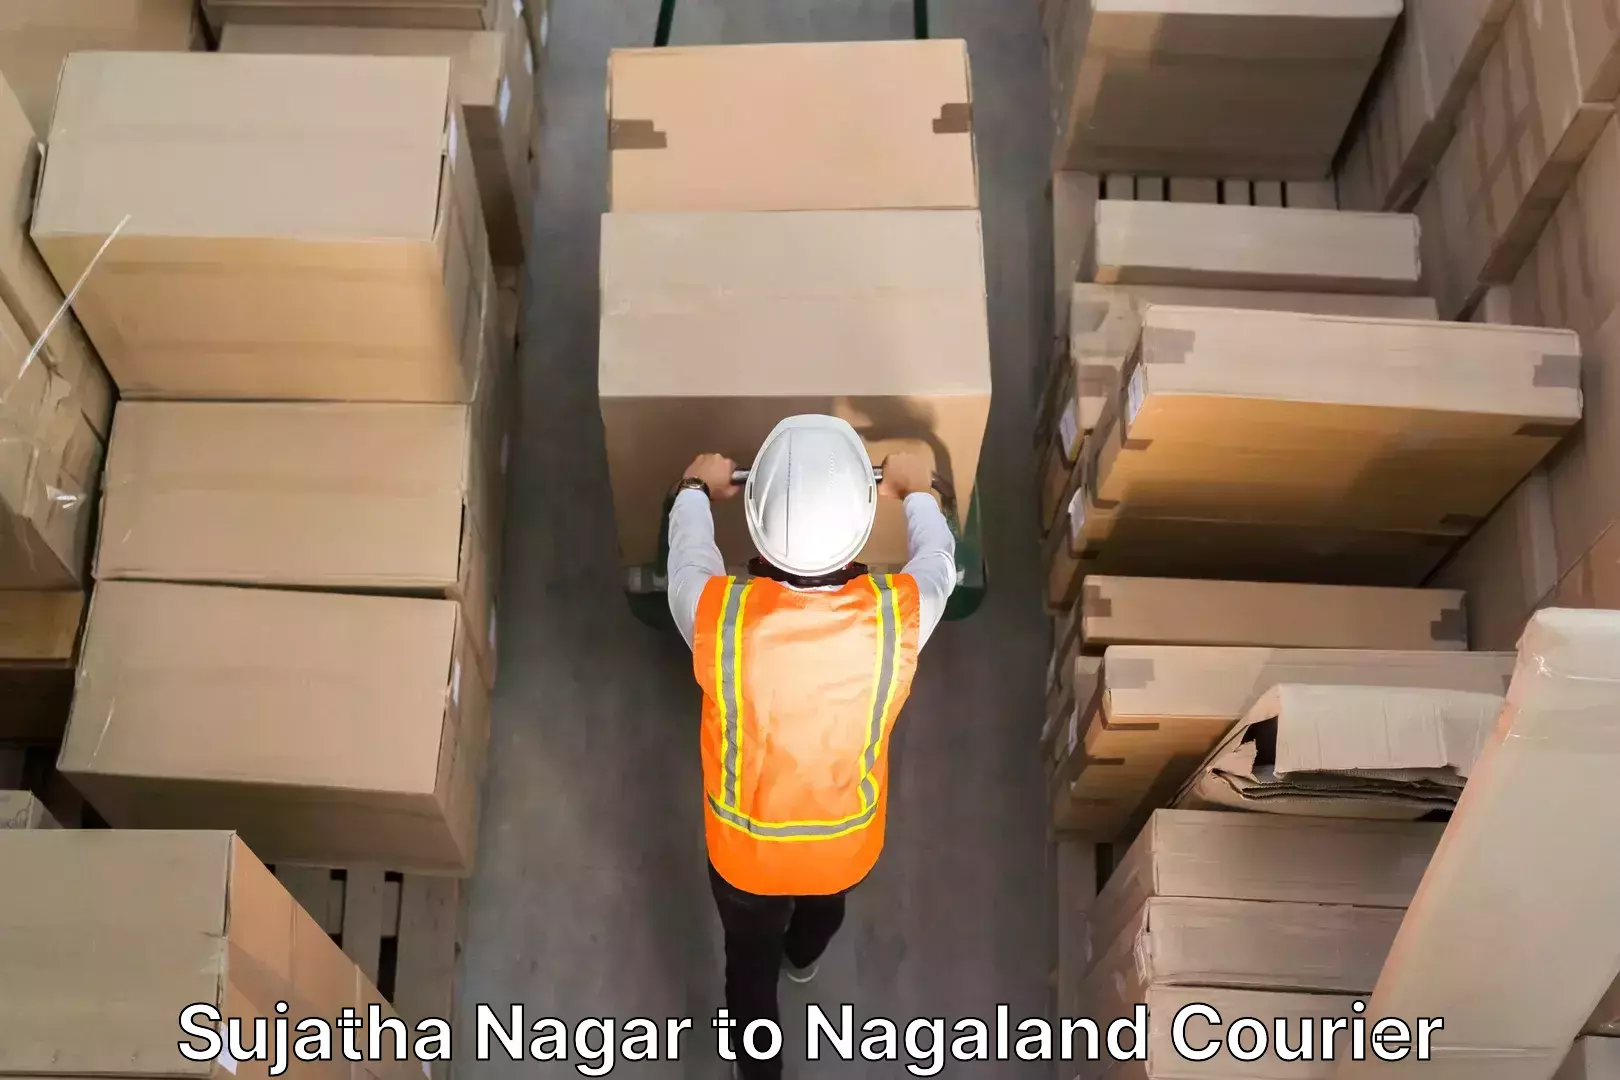 Professional movers and packers Sujatha Nagar to Nagaland